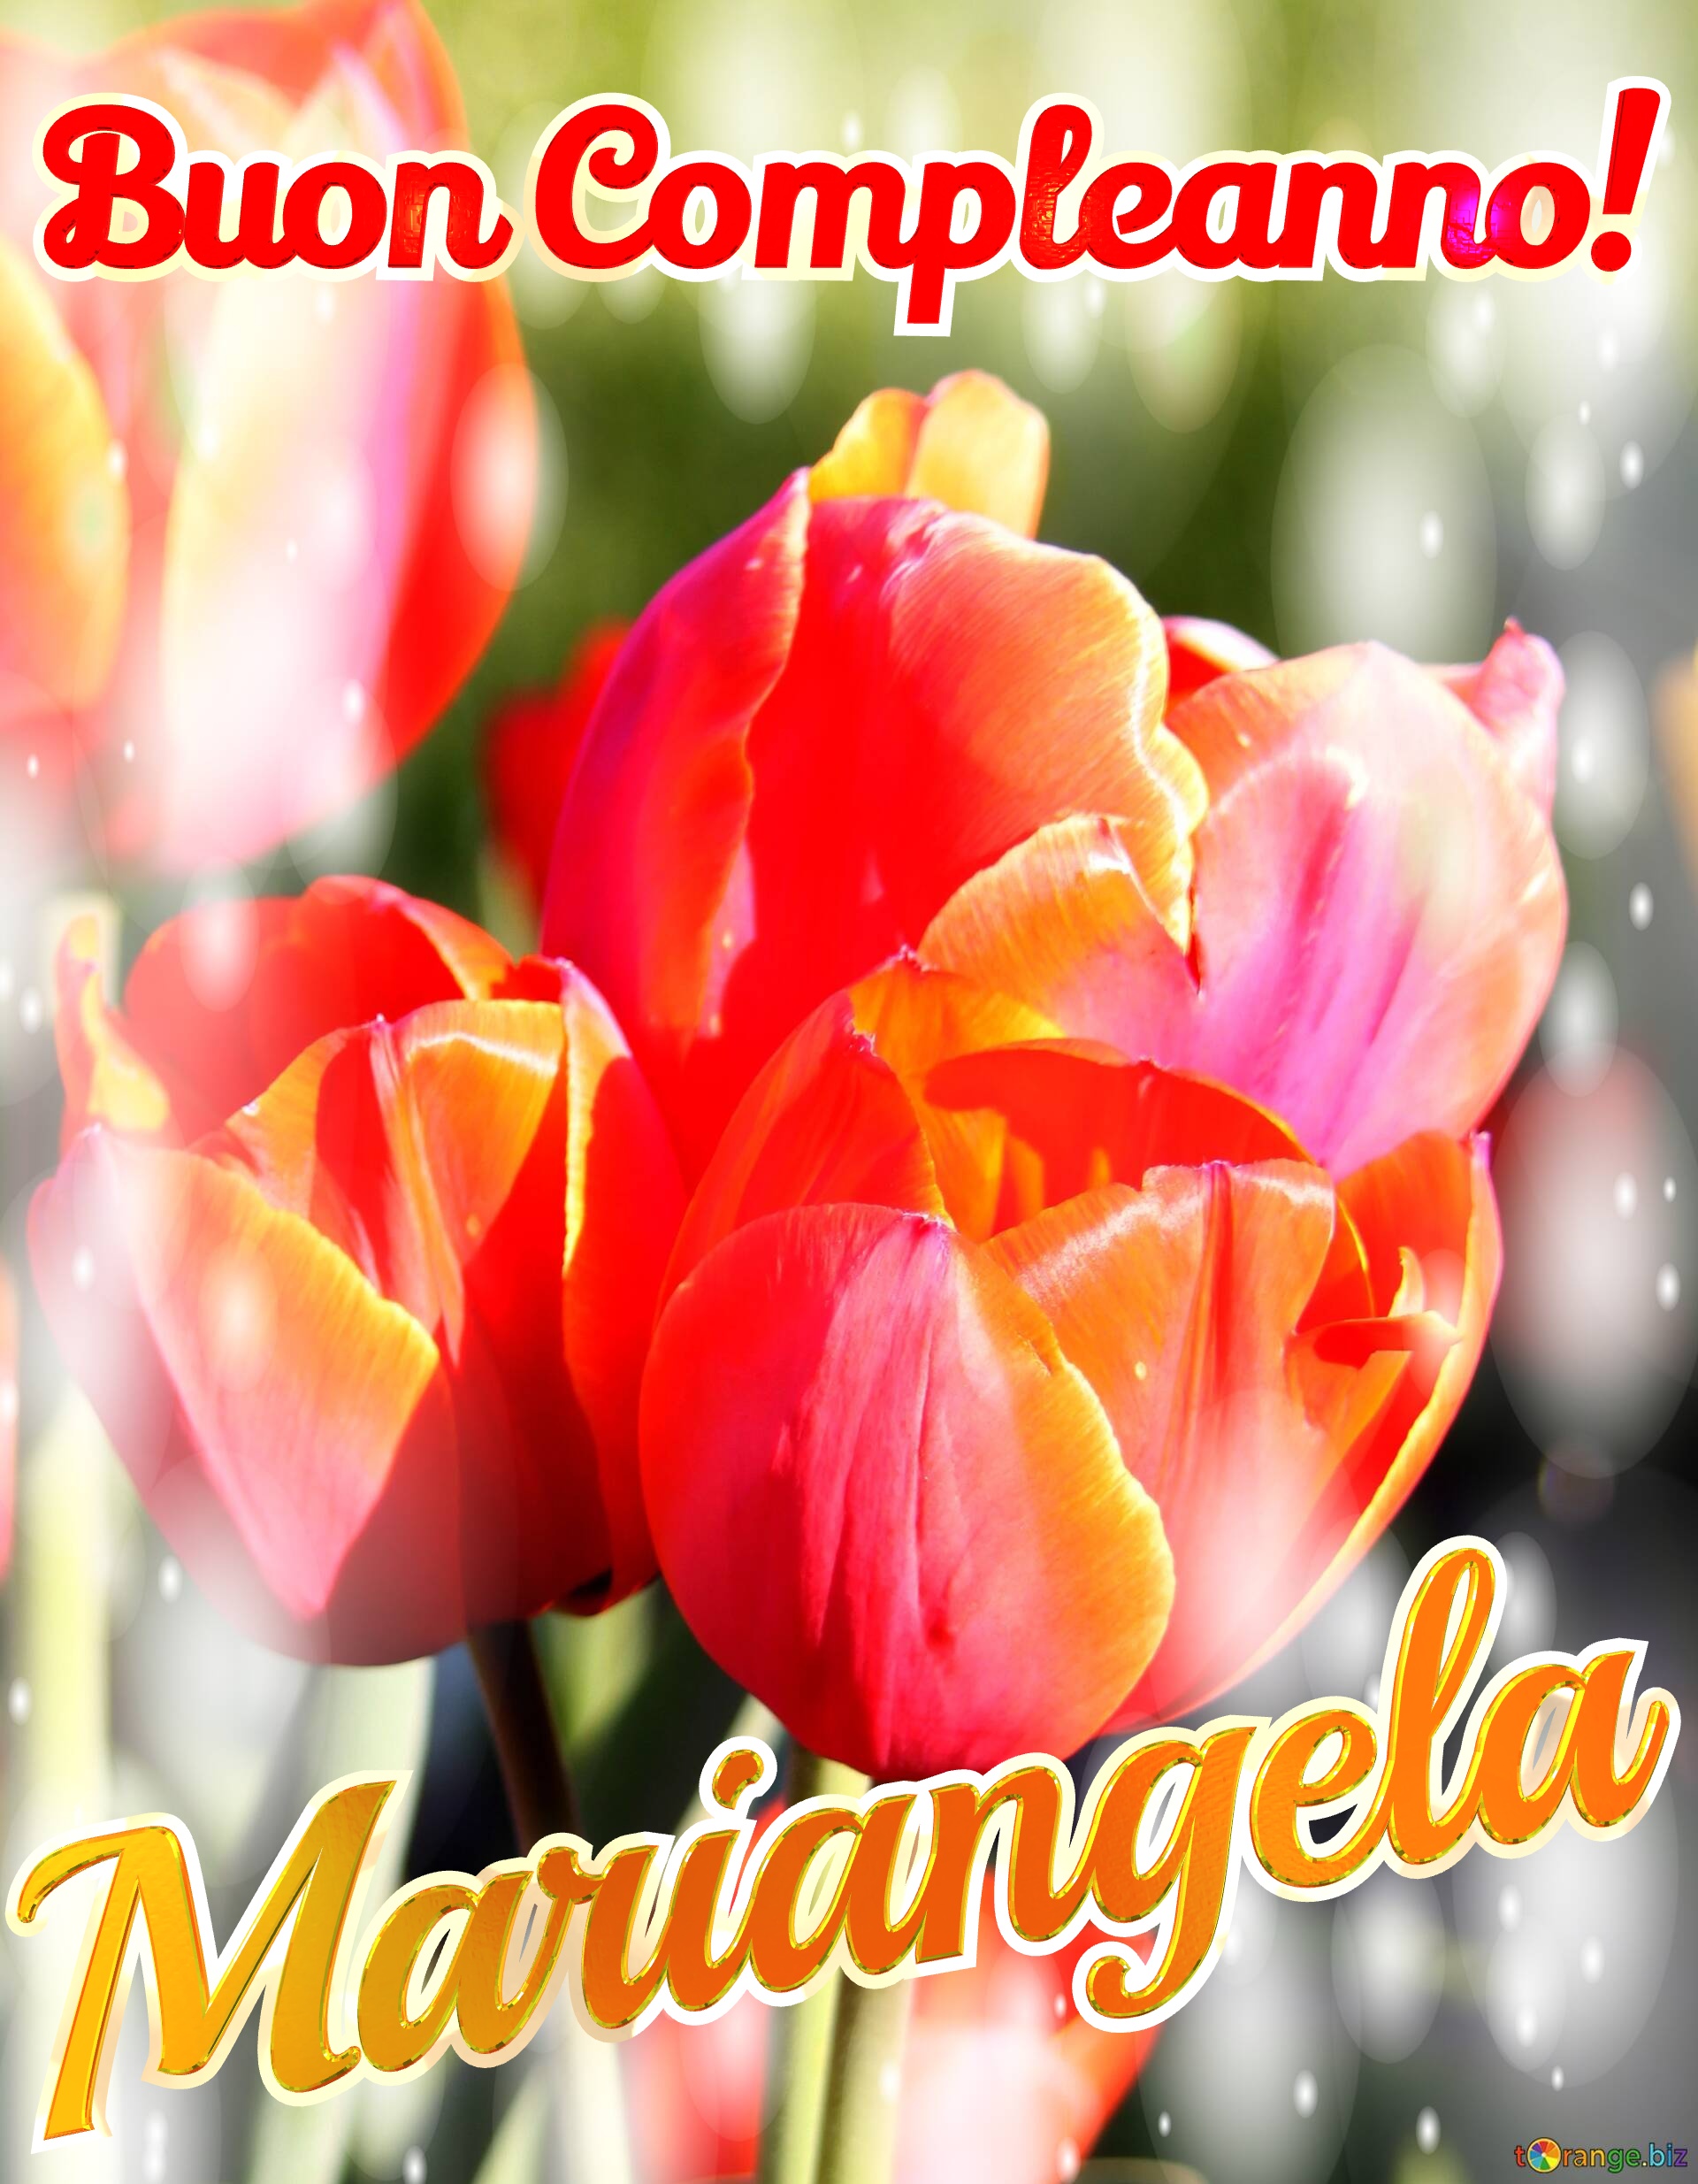 Buon Compleanno! Mariangela  Questi tulipani ti portano la bellezza della natura e la bellezza della vita, goditi ogni istante. №0